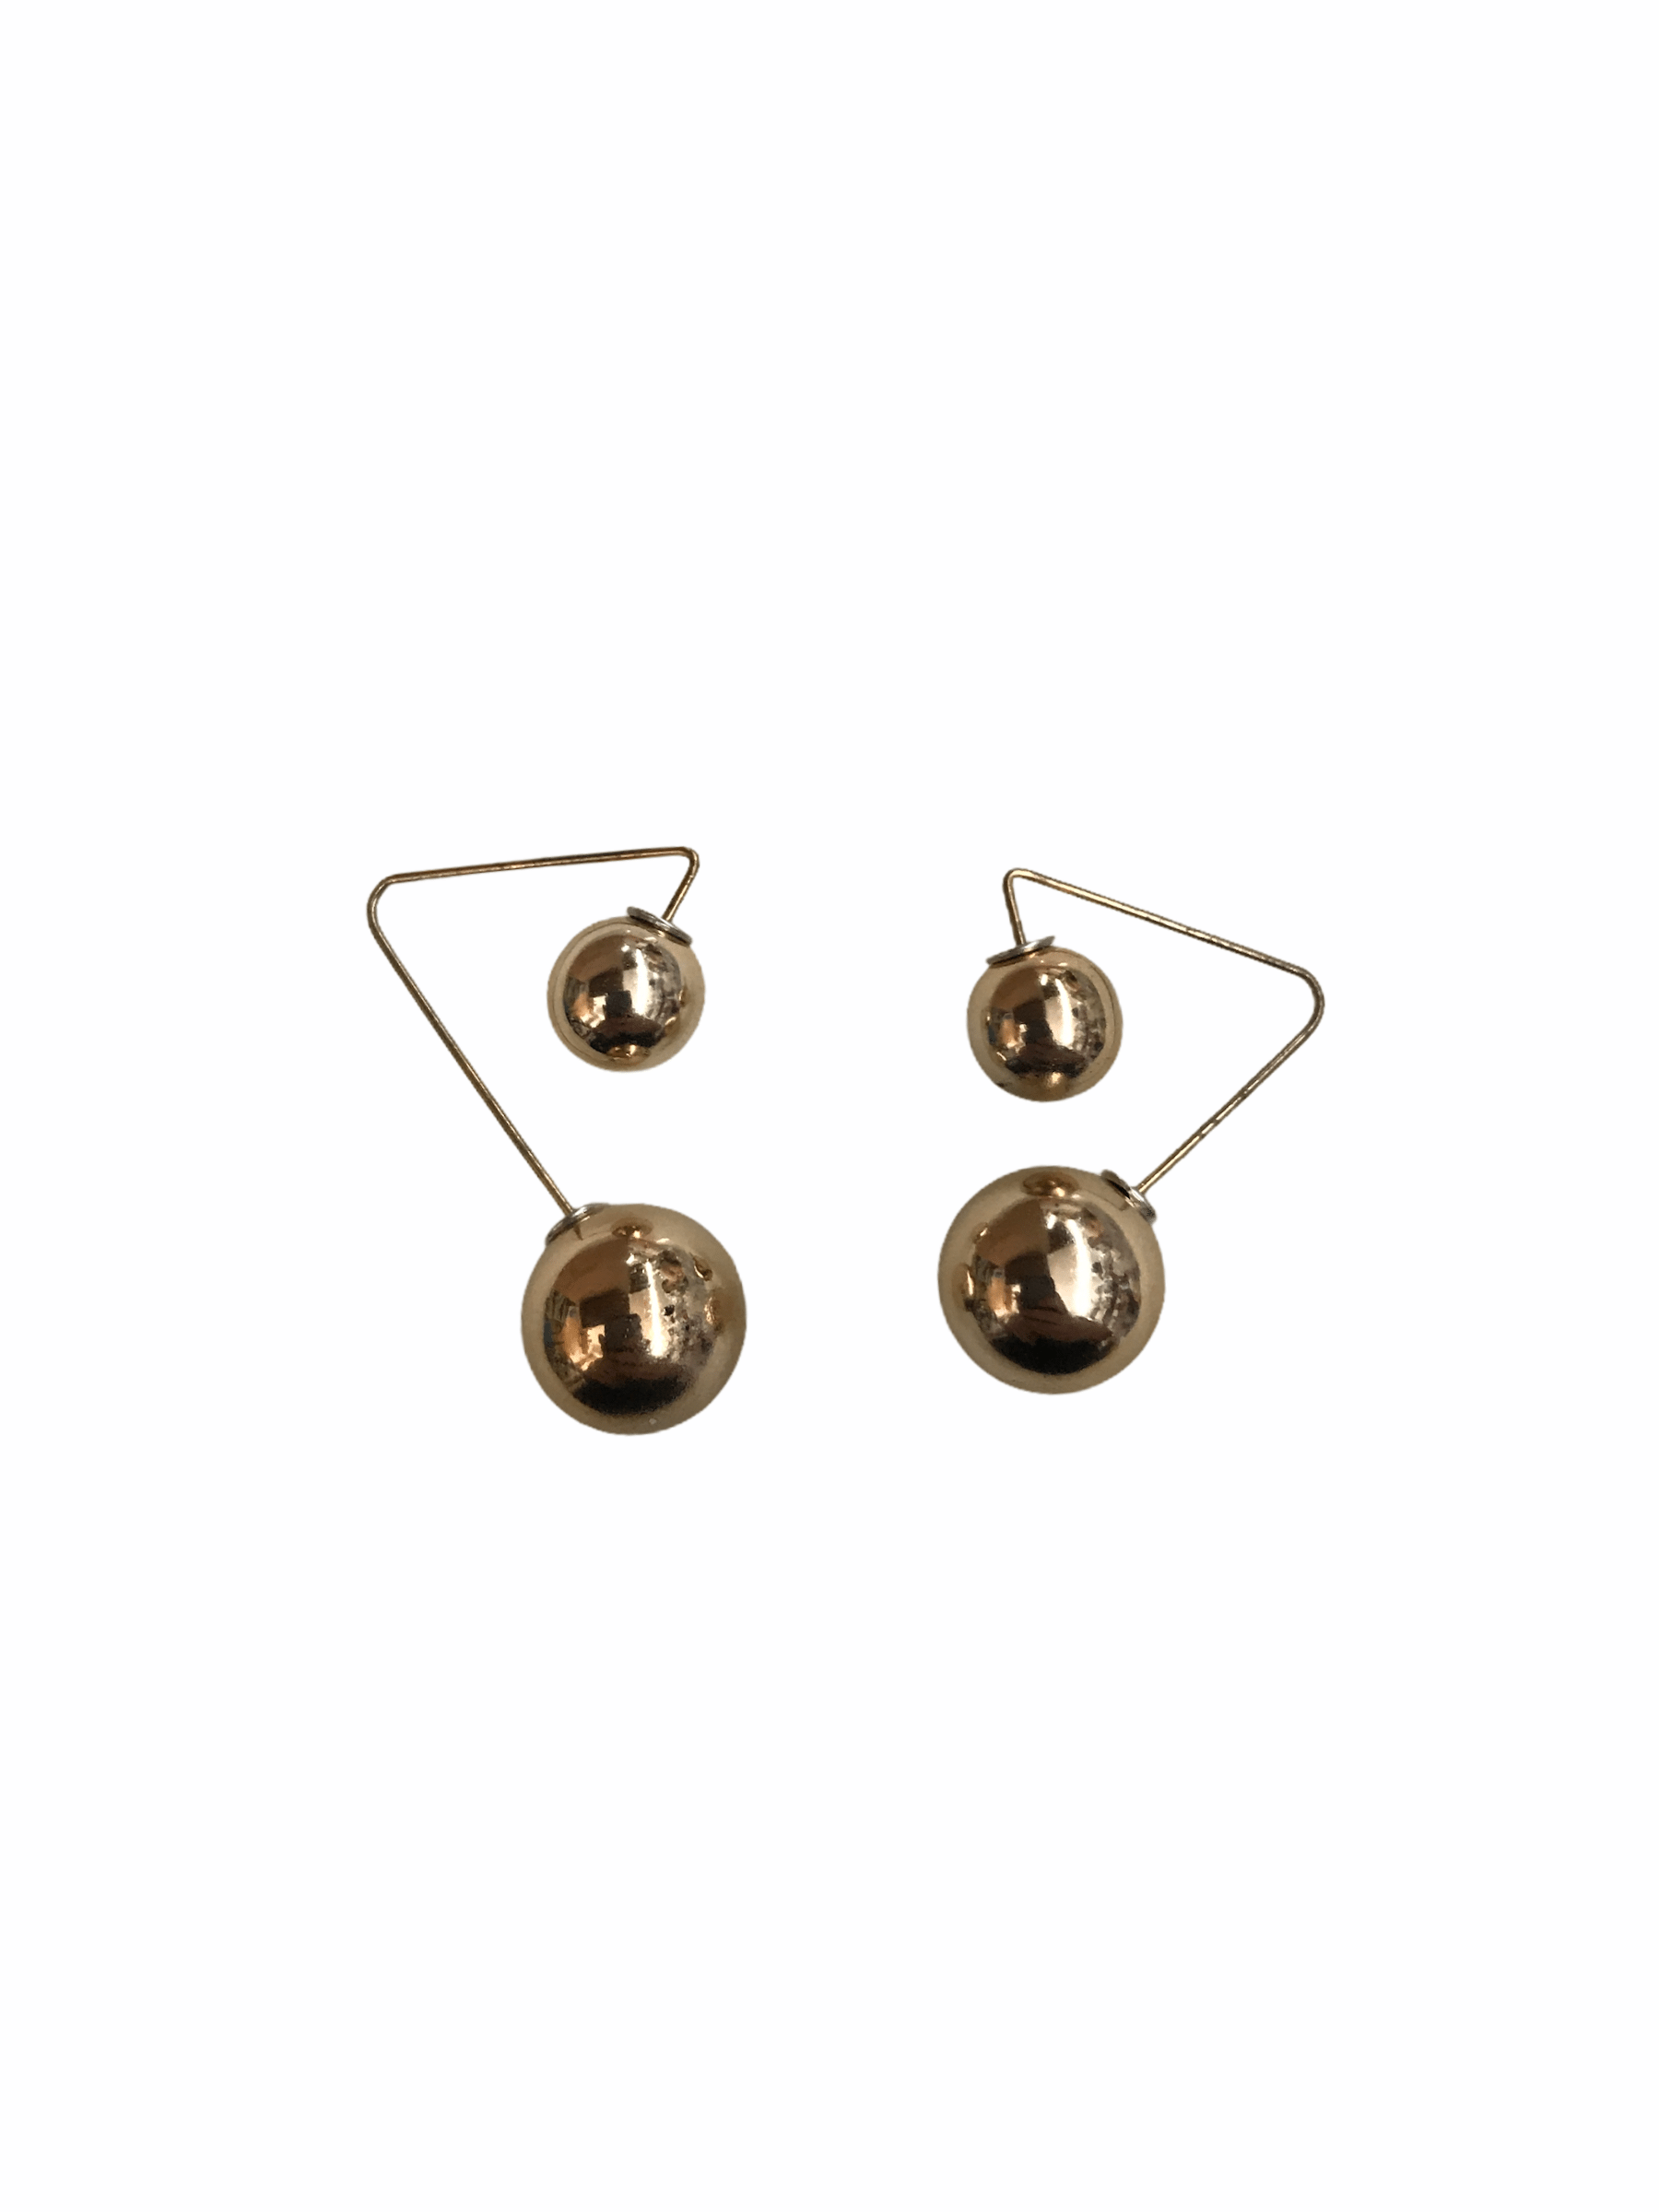 LOT DE 12 - Boucles d'oreilles double perle dorée    0,62€/paire | Grossiste-pro